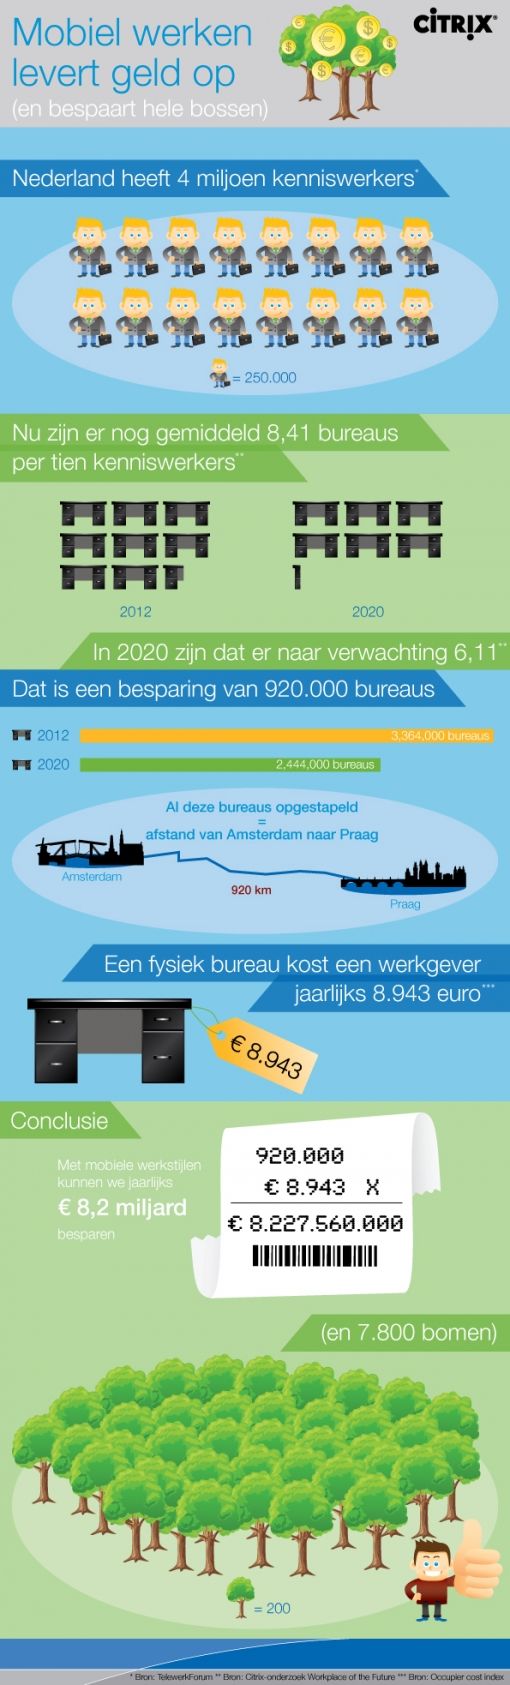 citrix-infographic-nl-v2.jpg